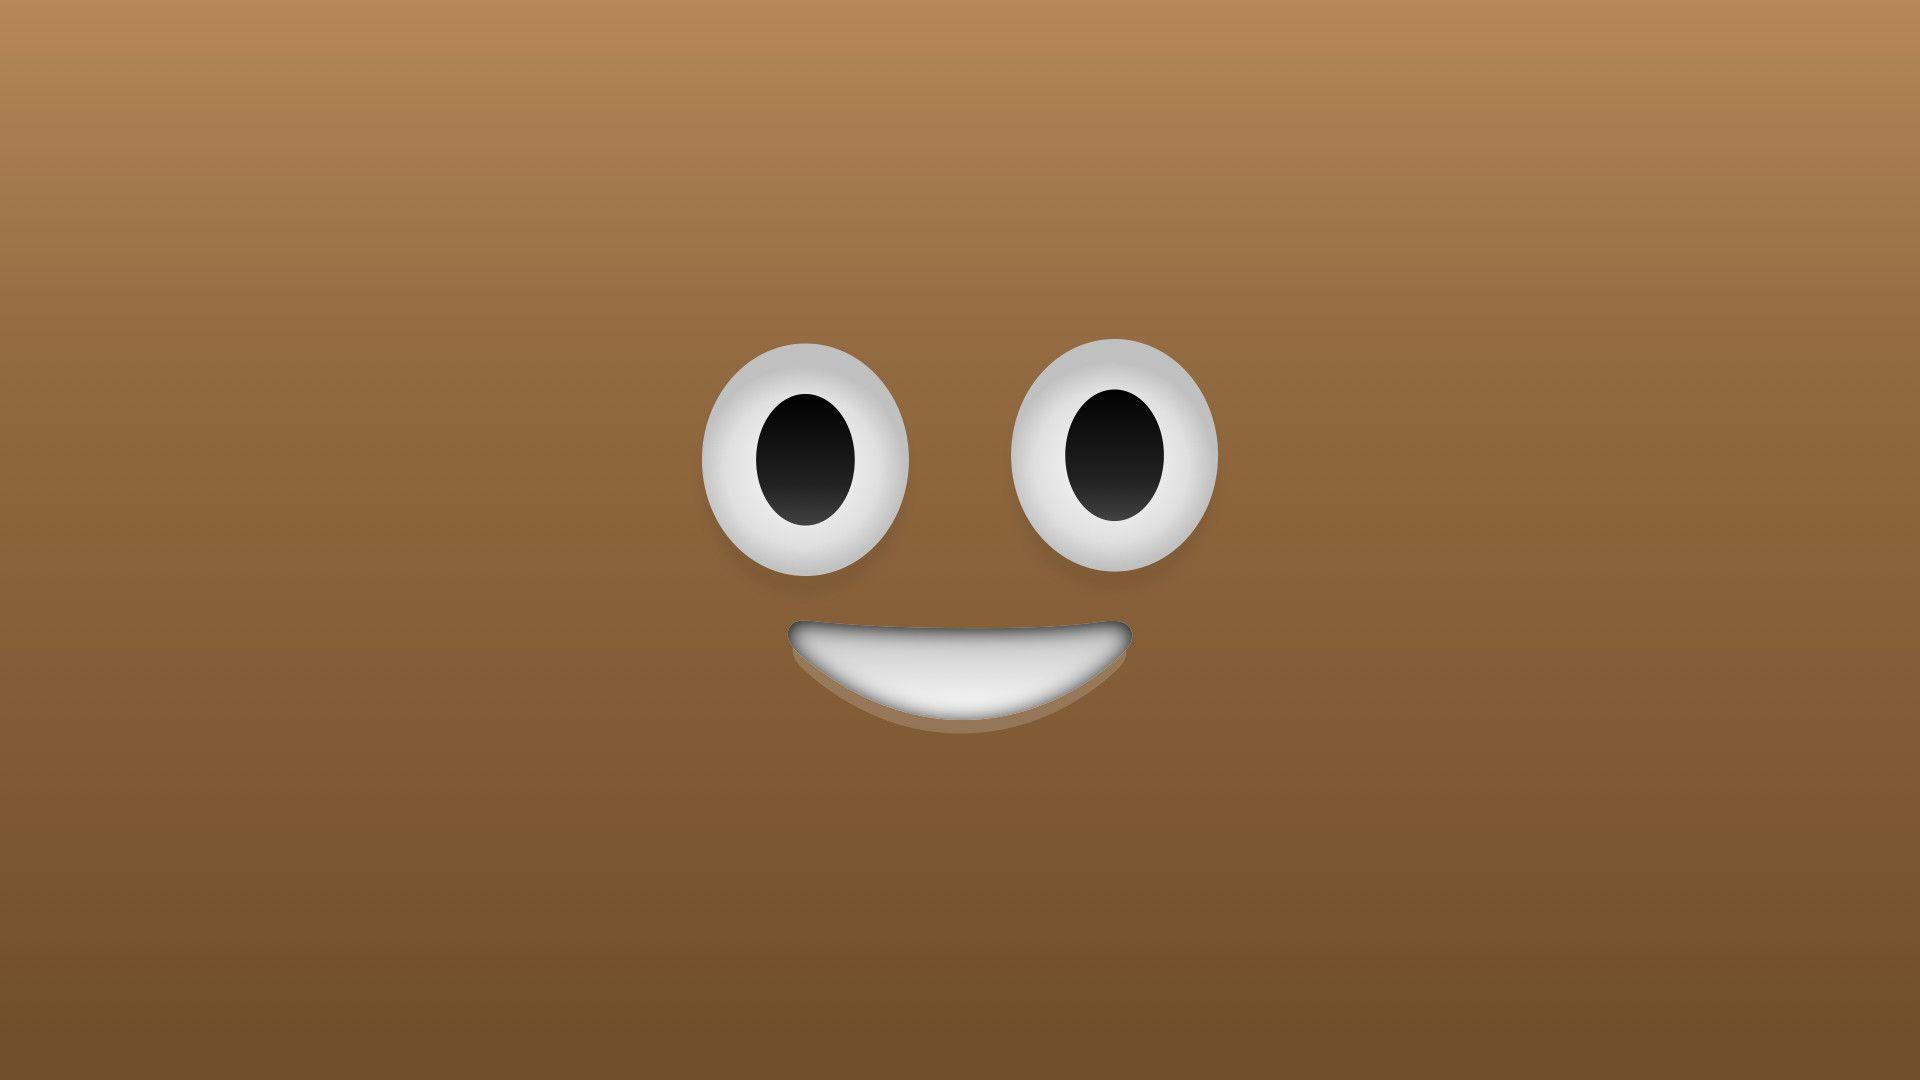 EMOJI STICKER  poop emoji illustration transparent background PNG clipart   HiClipart